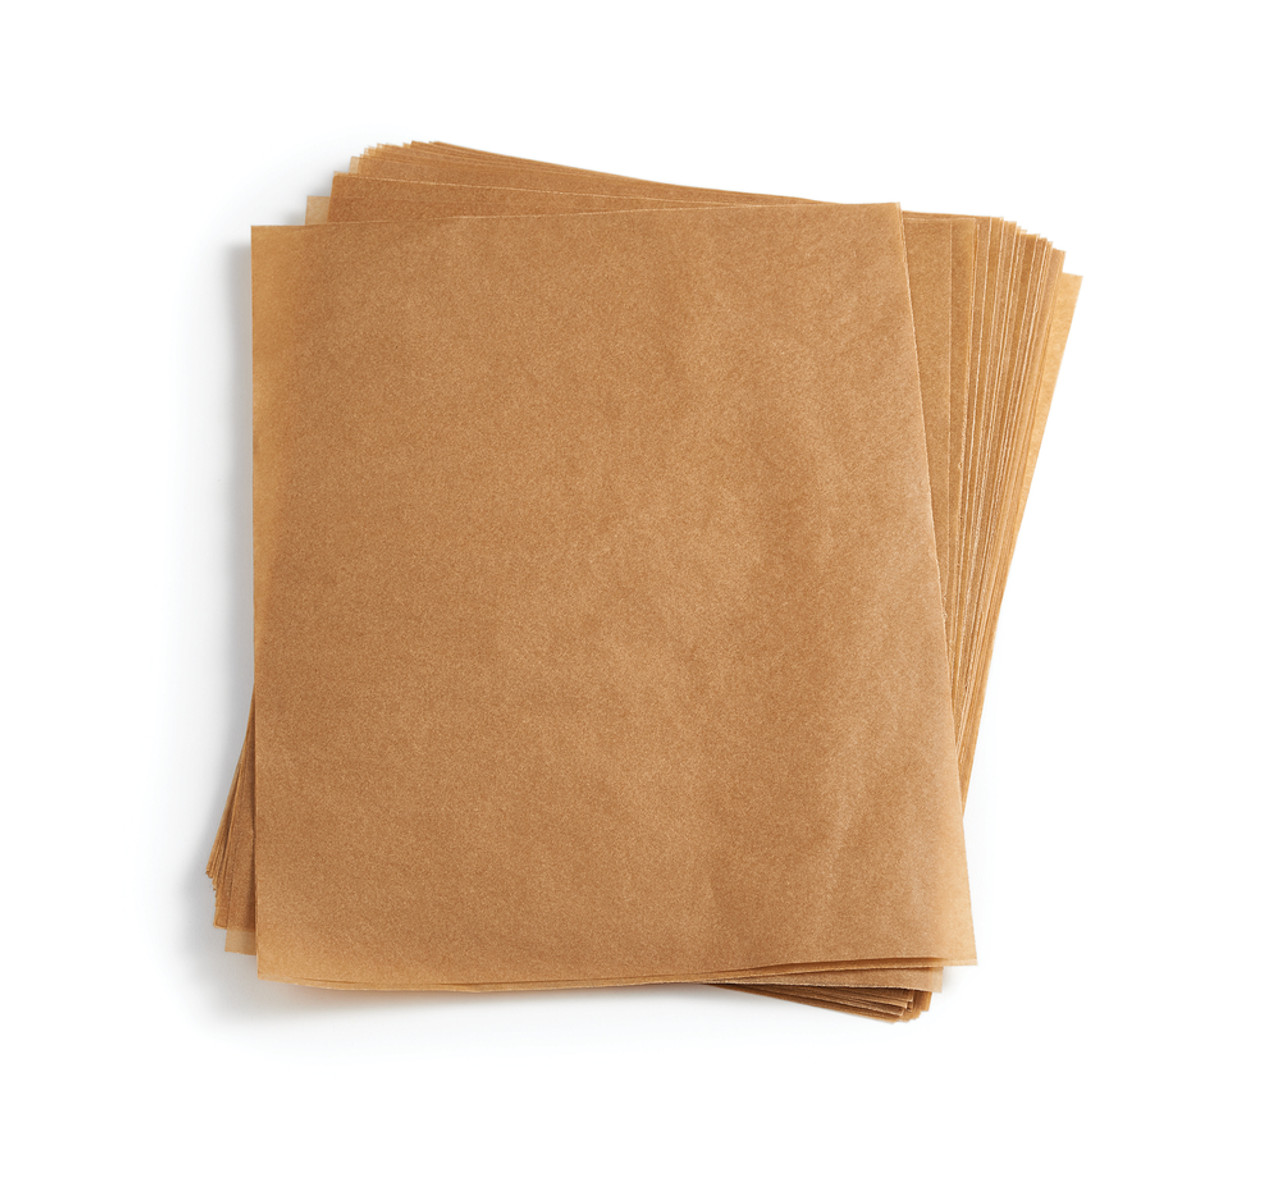  Natural Parchment Paper - 50 Sheets - Desktop